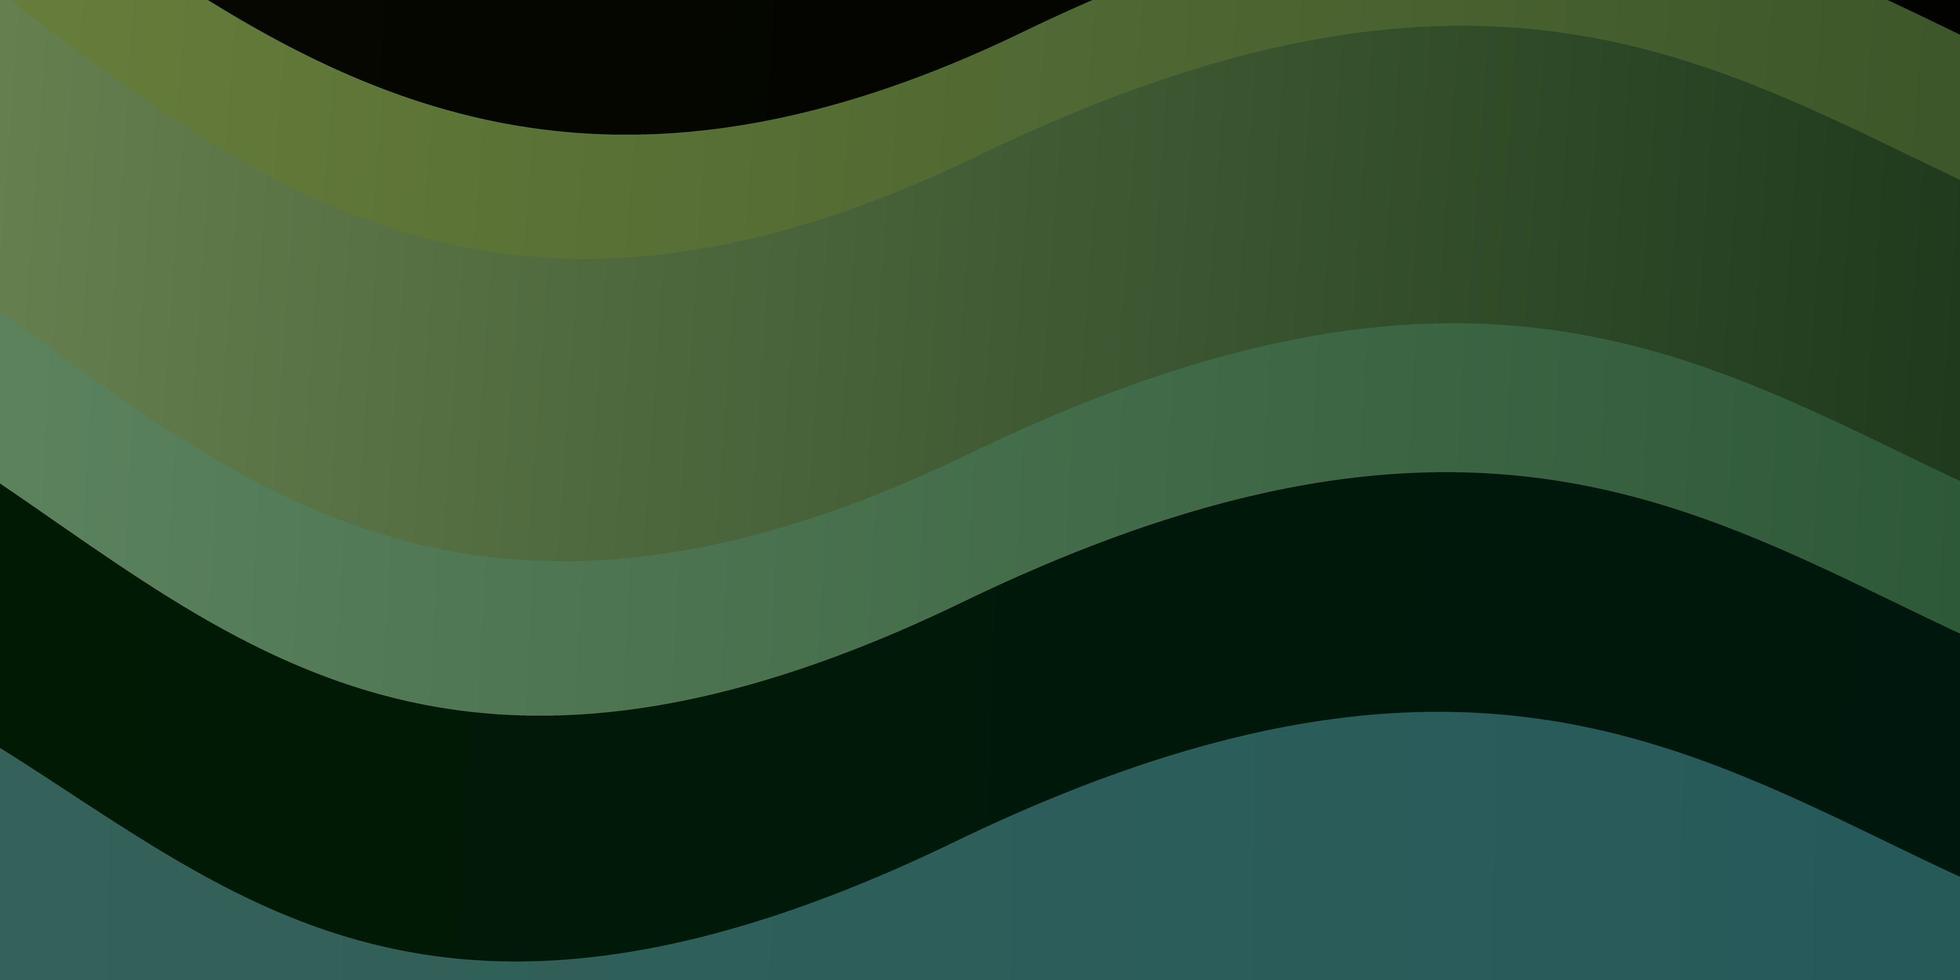 sfondo vettoriale azzurro, verde con linee piegate.